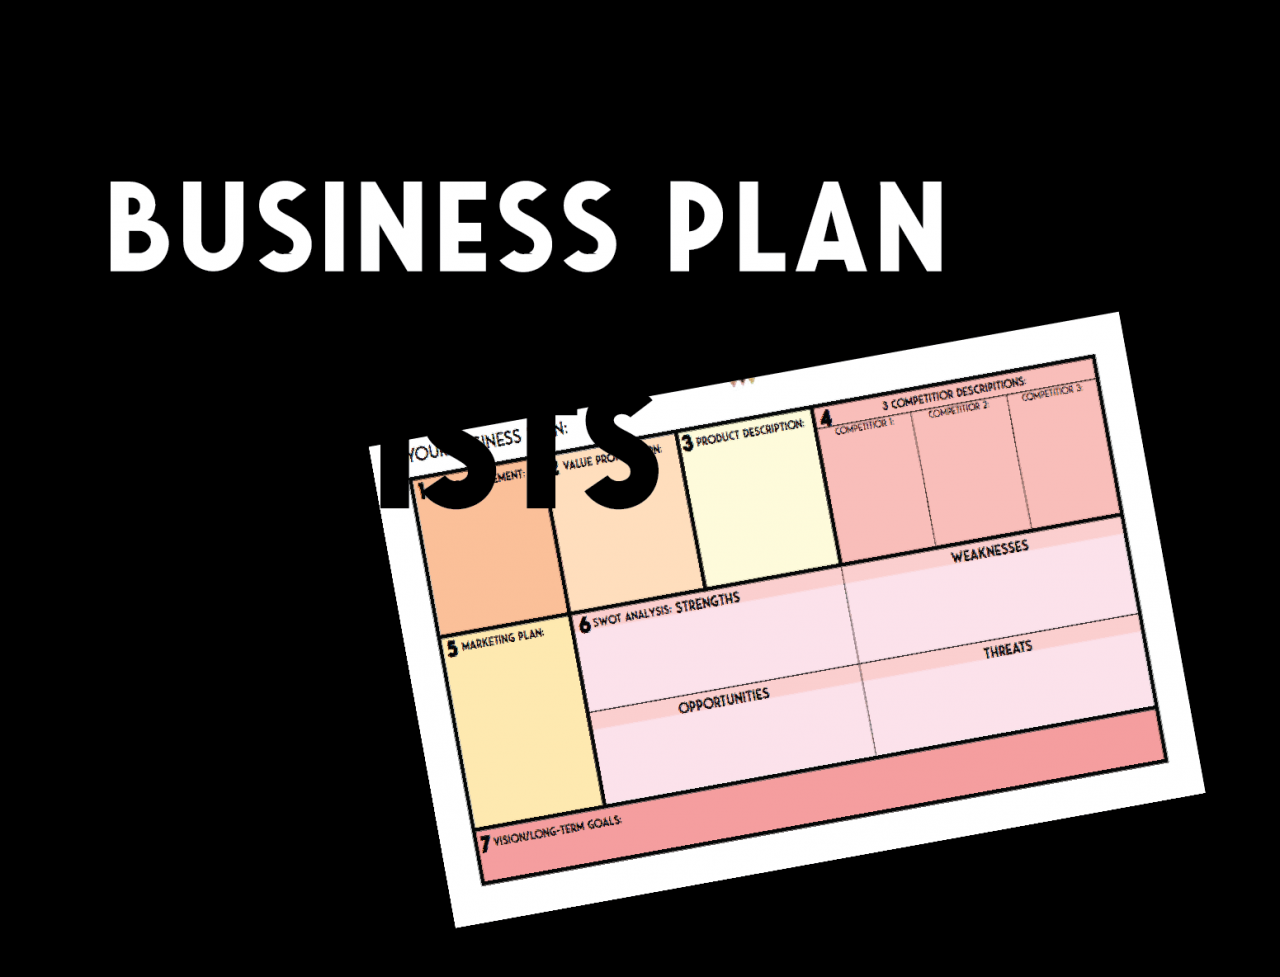 How to make an art business plan